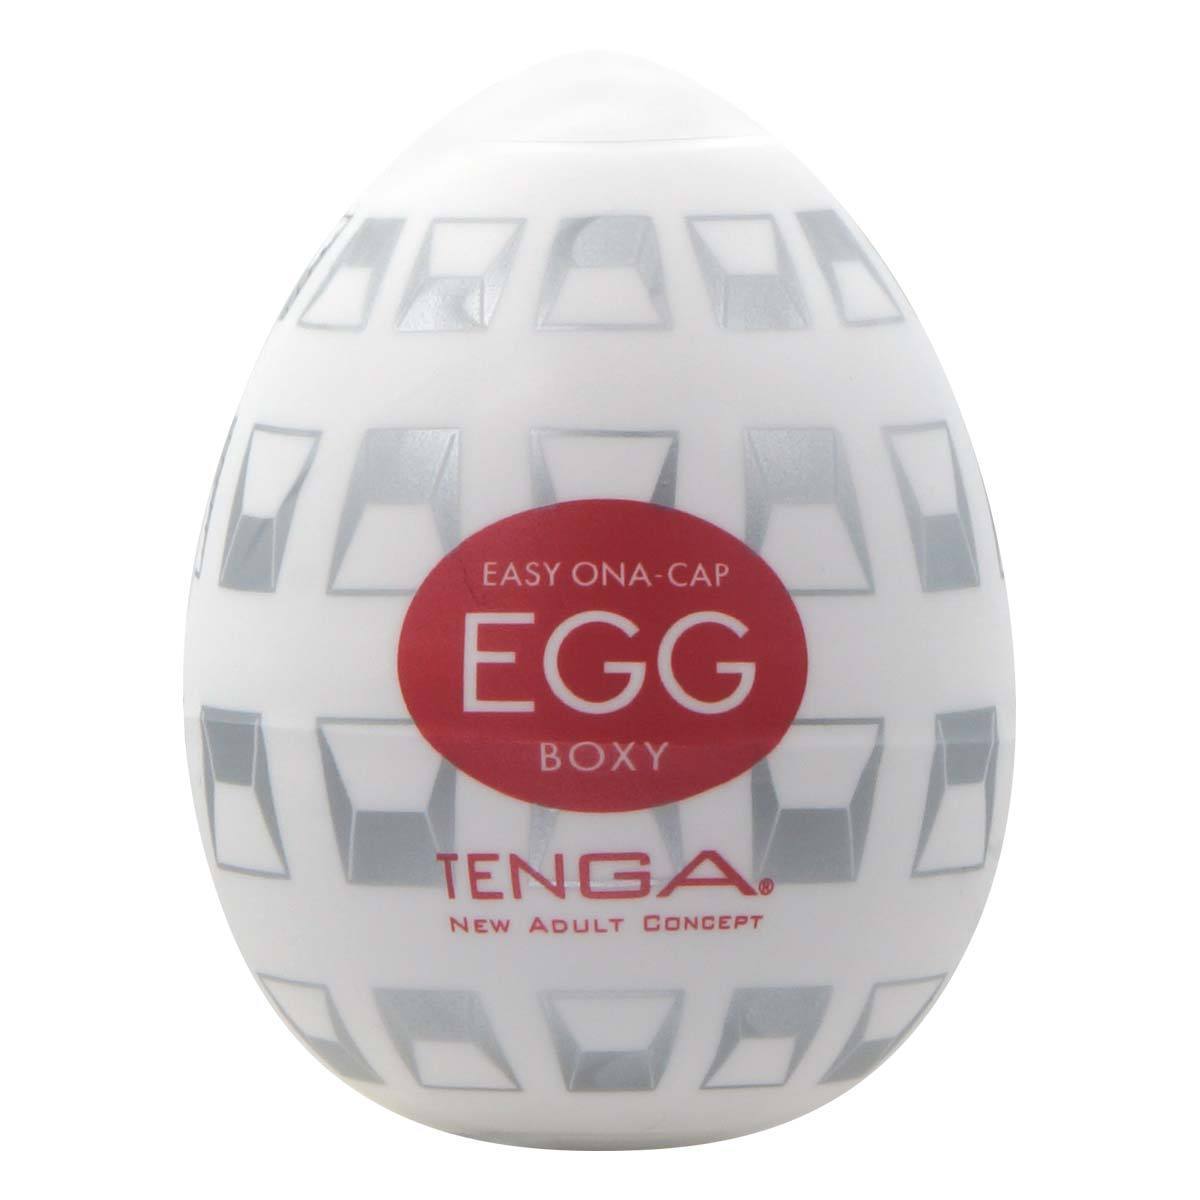 TENGA Egg Boxy 多角飛機蛋 飛機蛋 購買